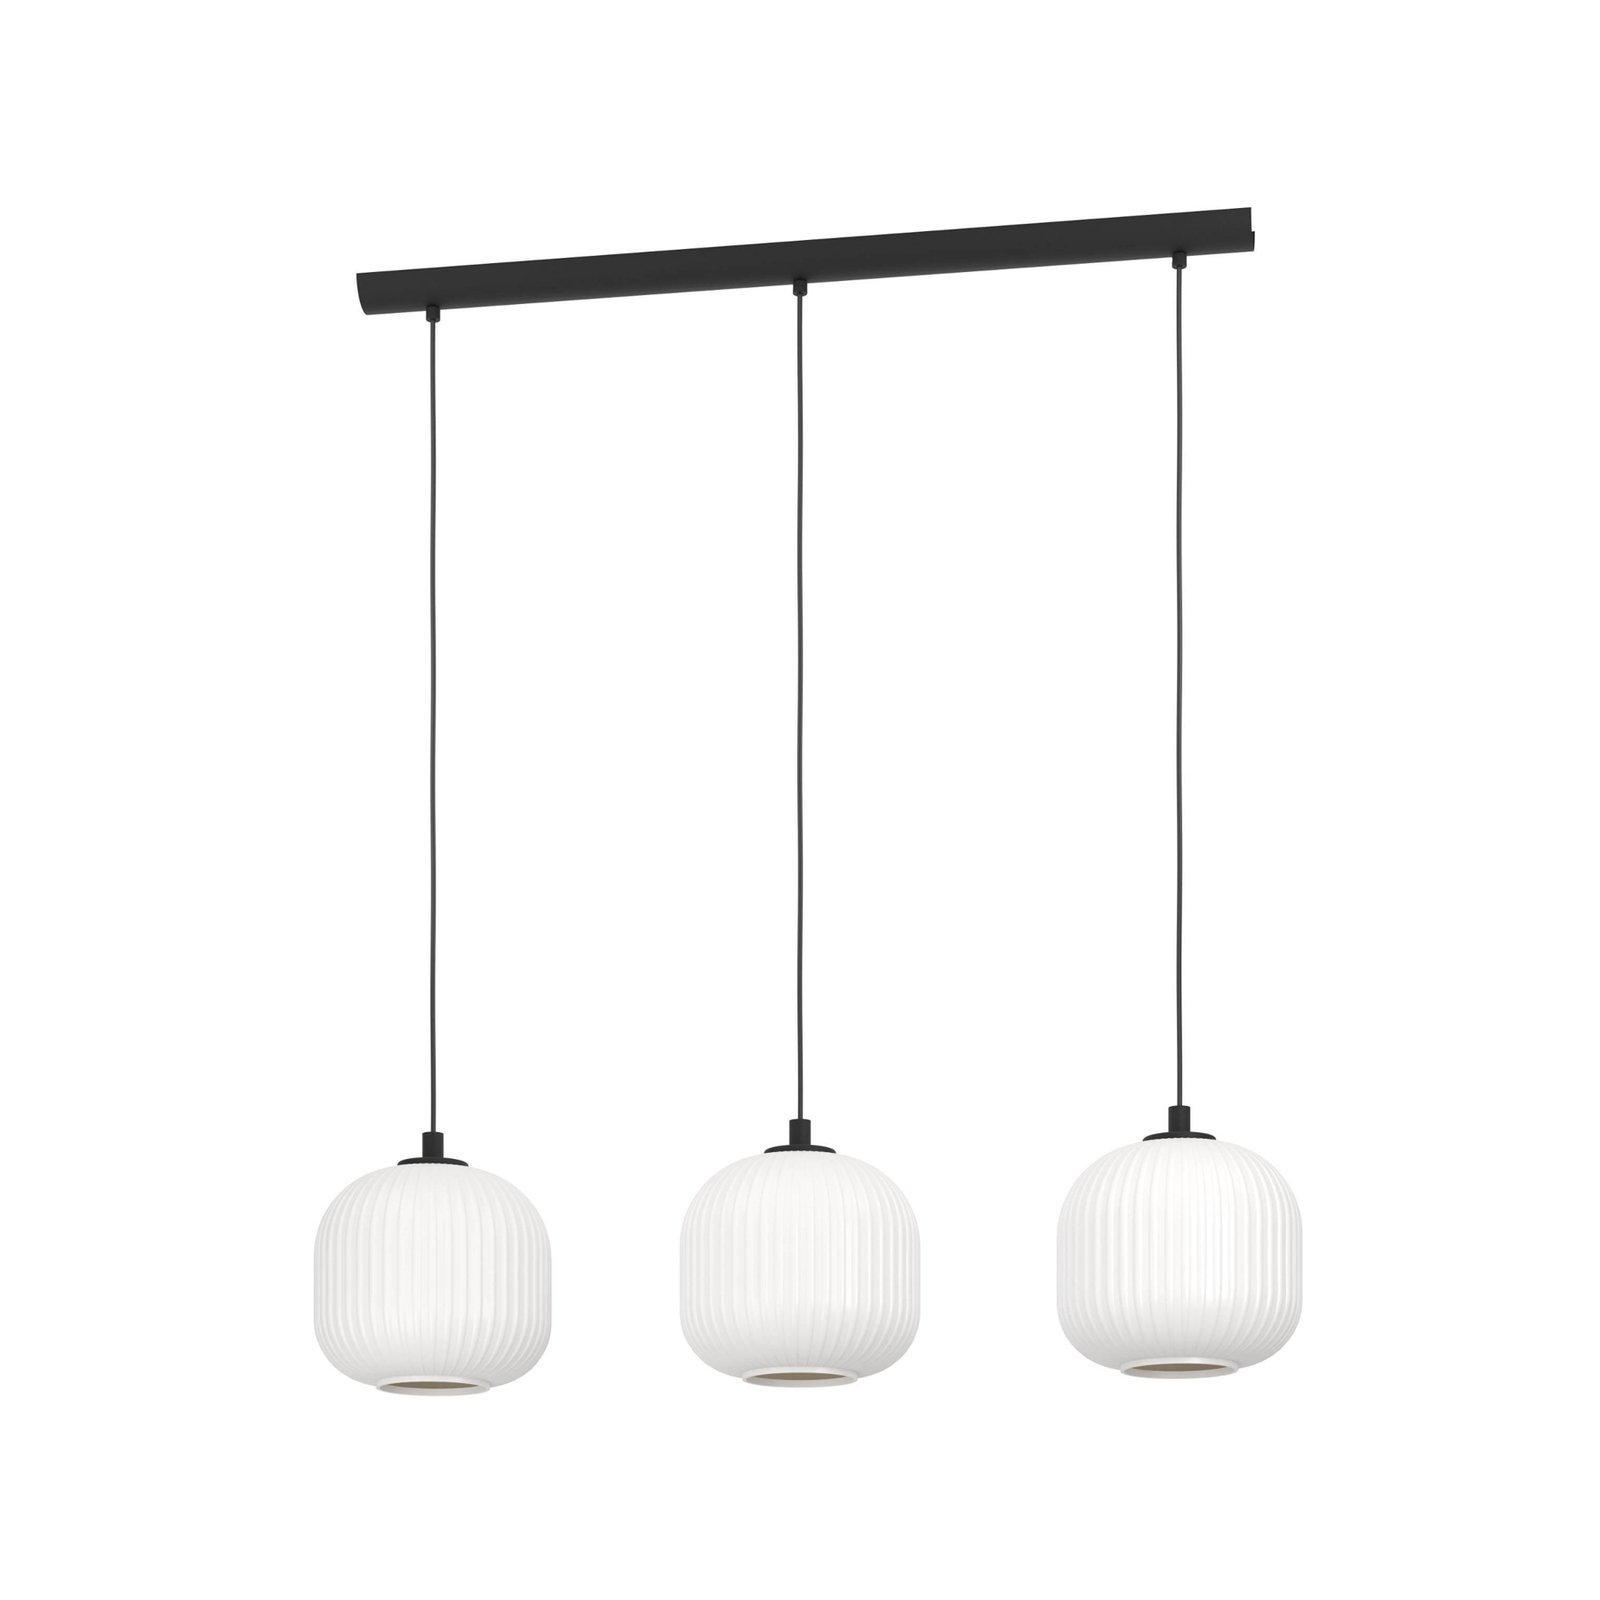 Mantunalle pendant light, length 120 cm, black/white, 3-bulb.